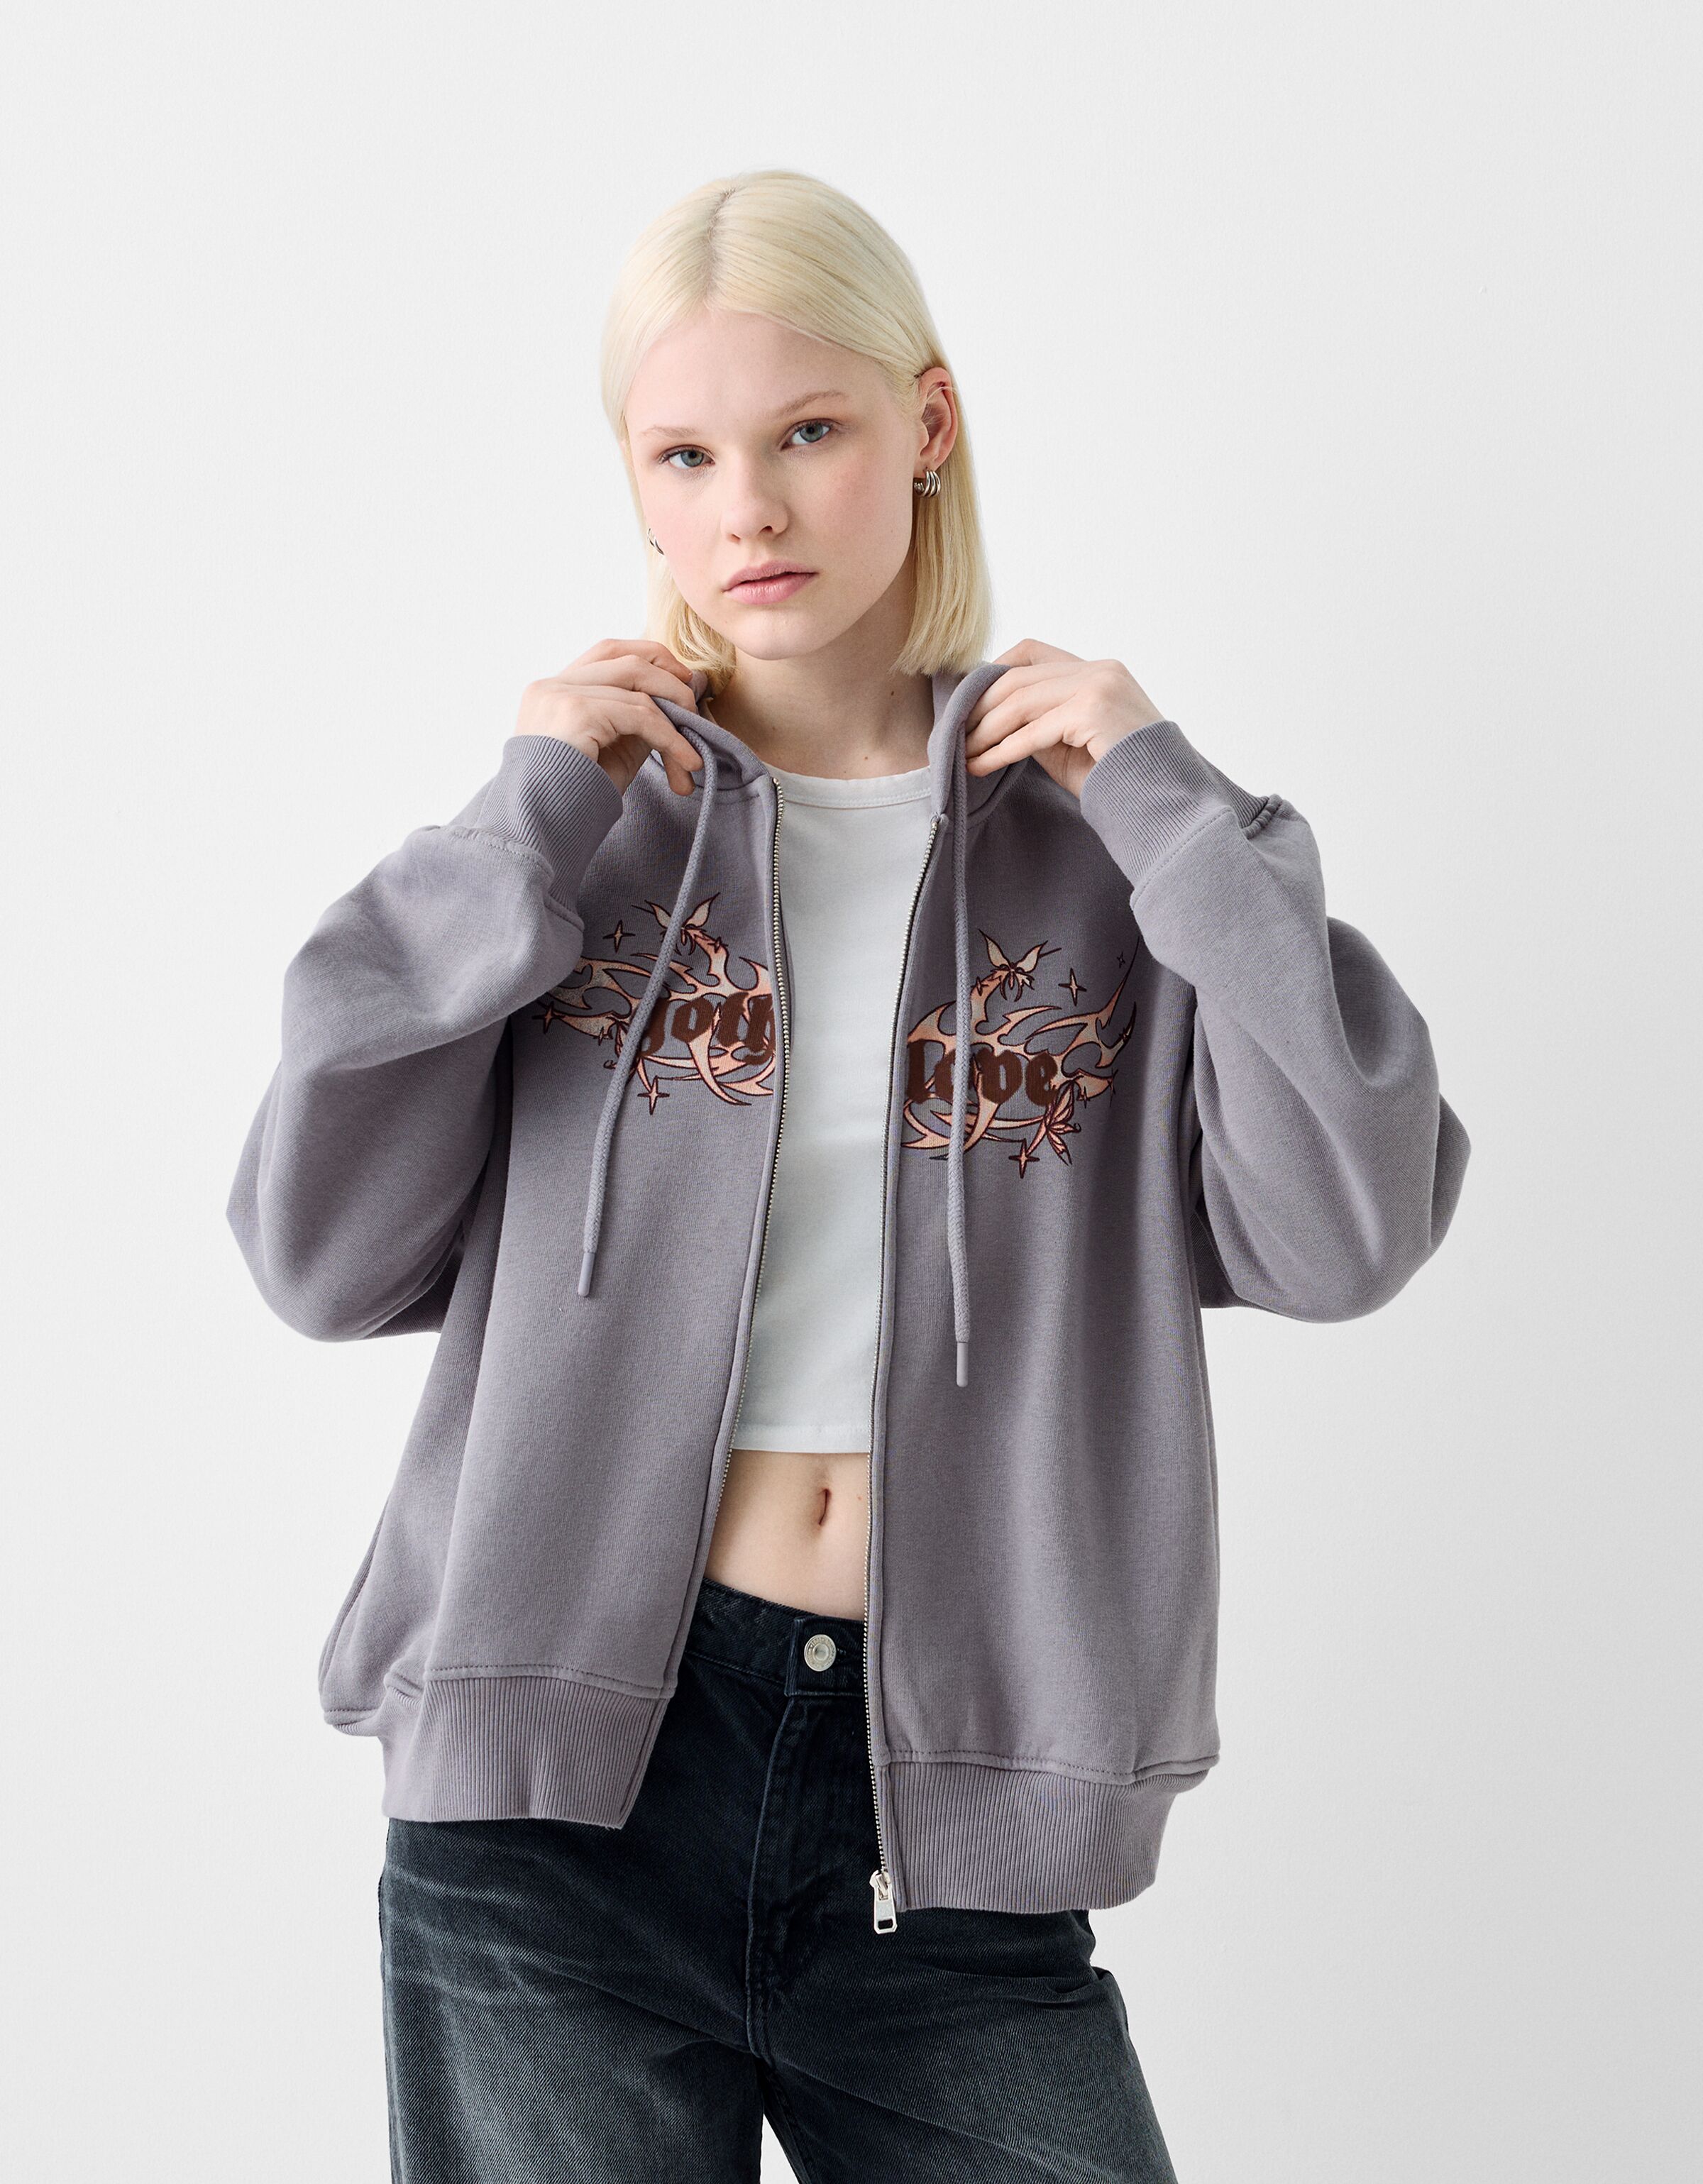 Printed hoodie with zipper - Sweatshirts and hoodies - BSK Teen 